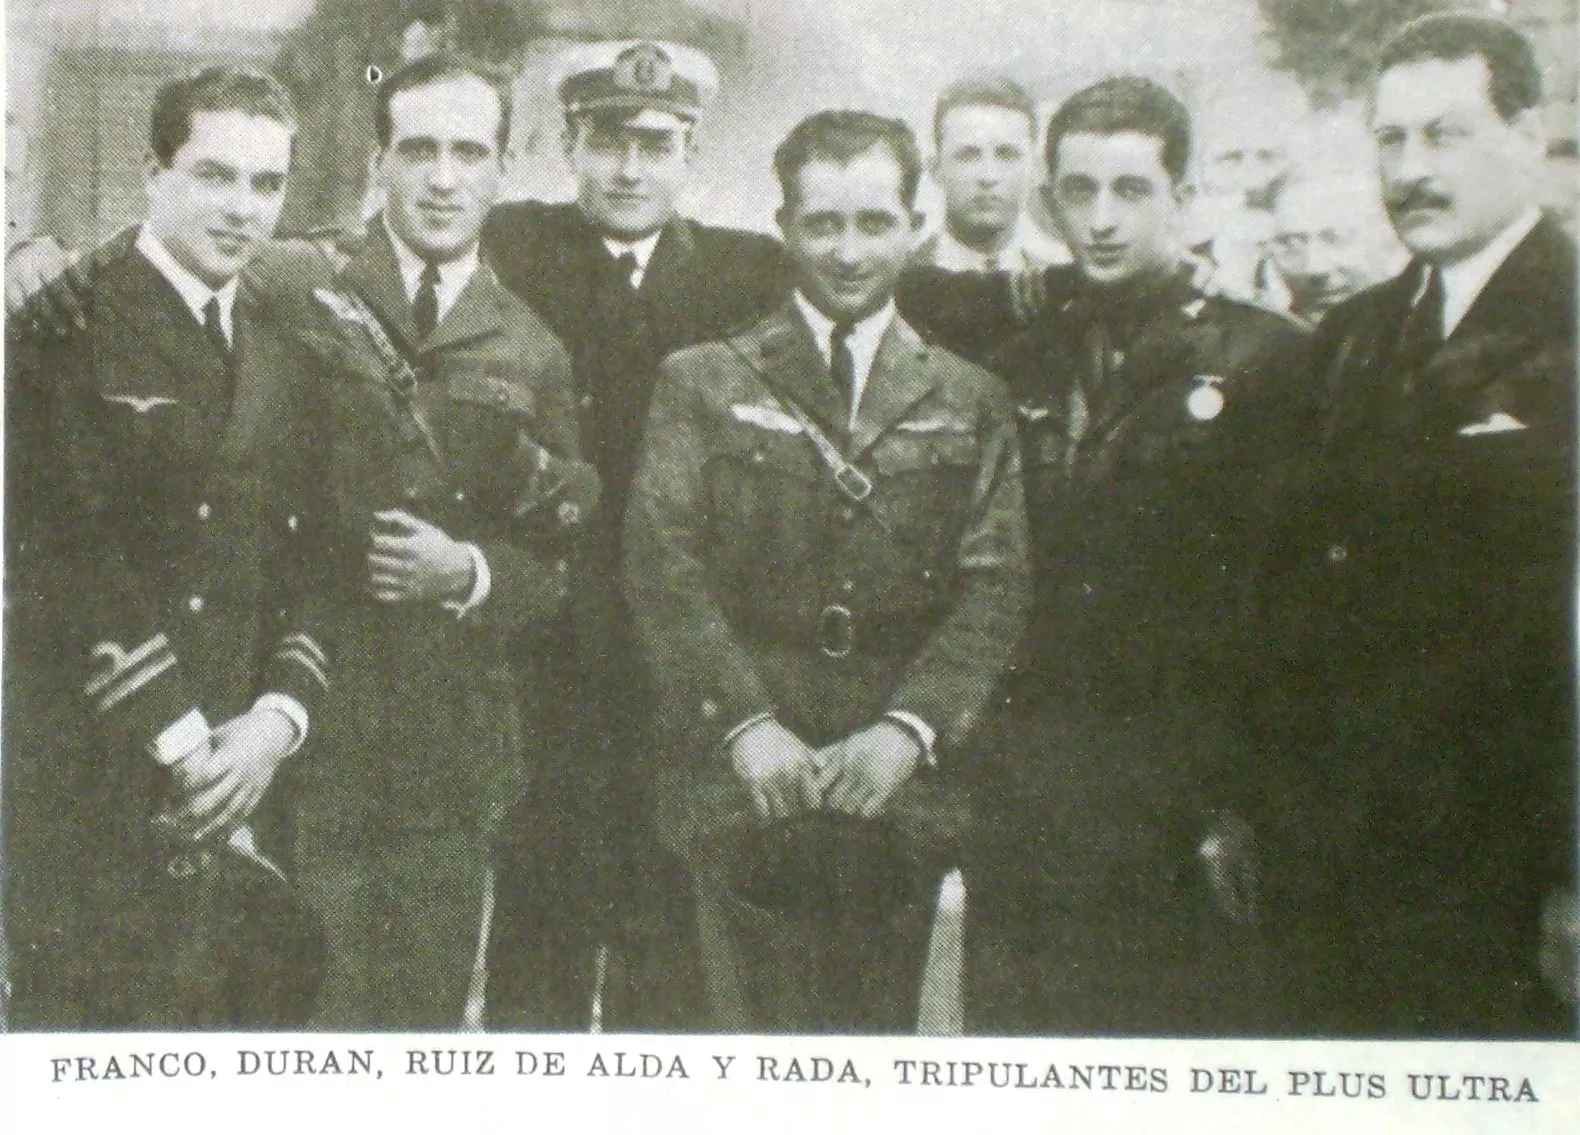 Ramón Franco amb els tripulants del 'Plus Ultra': Durán, Ruiz de Alda i Rada